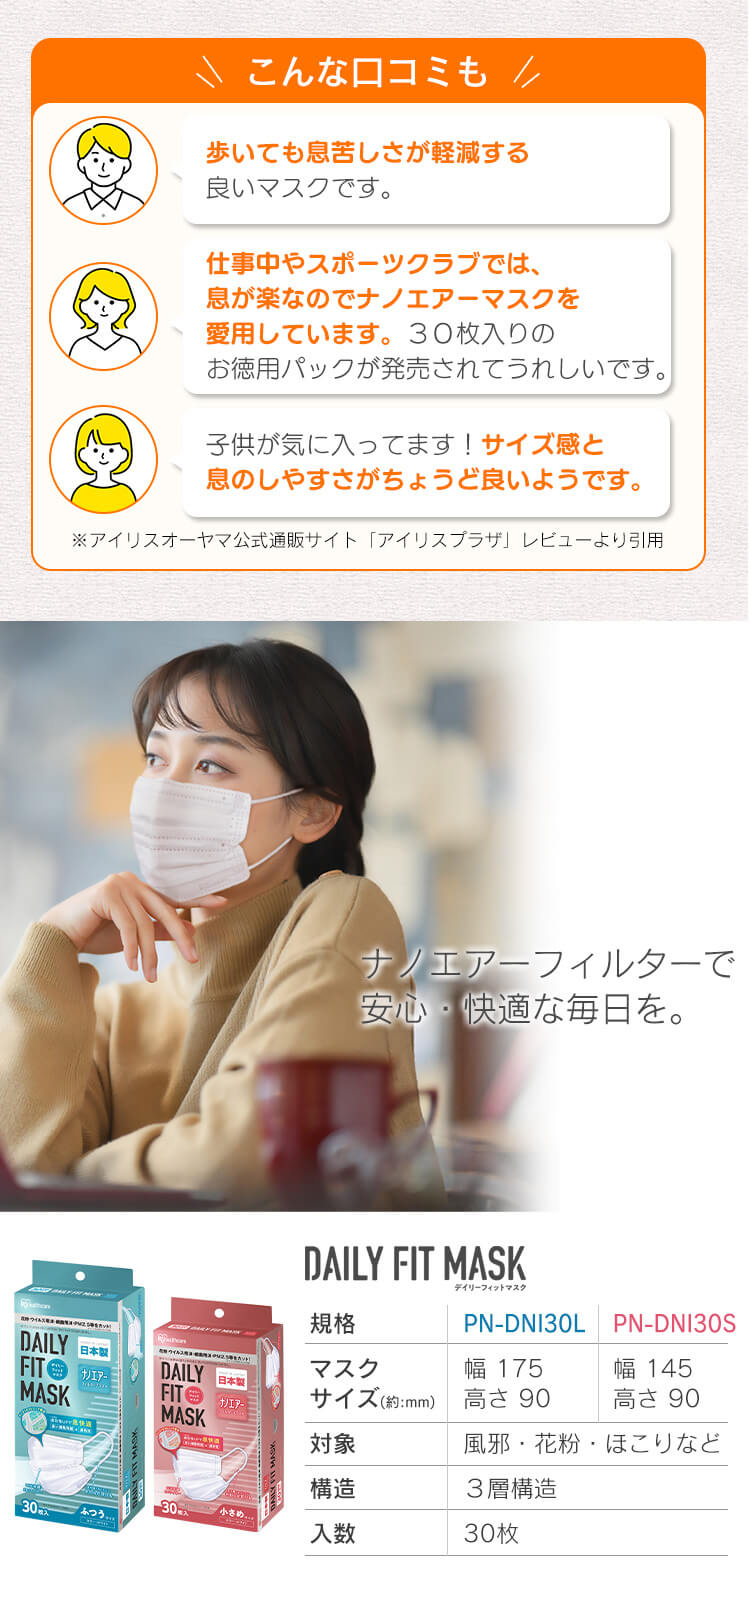 マスク 不織布 アイリスオーヤマ 日本製 不織布マスク 使い捨てマスク